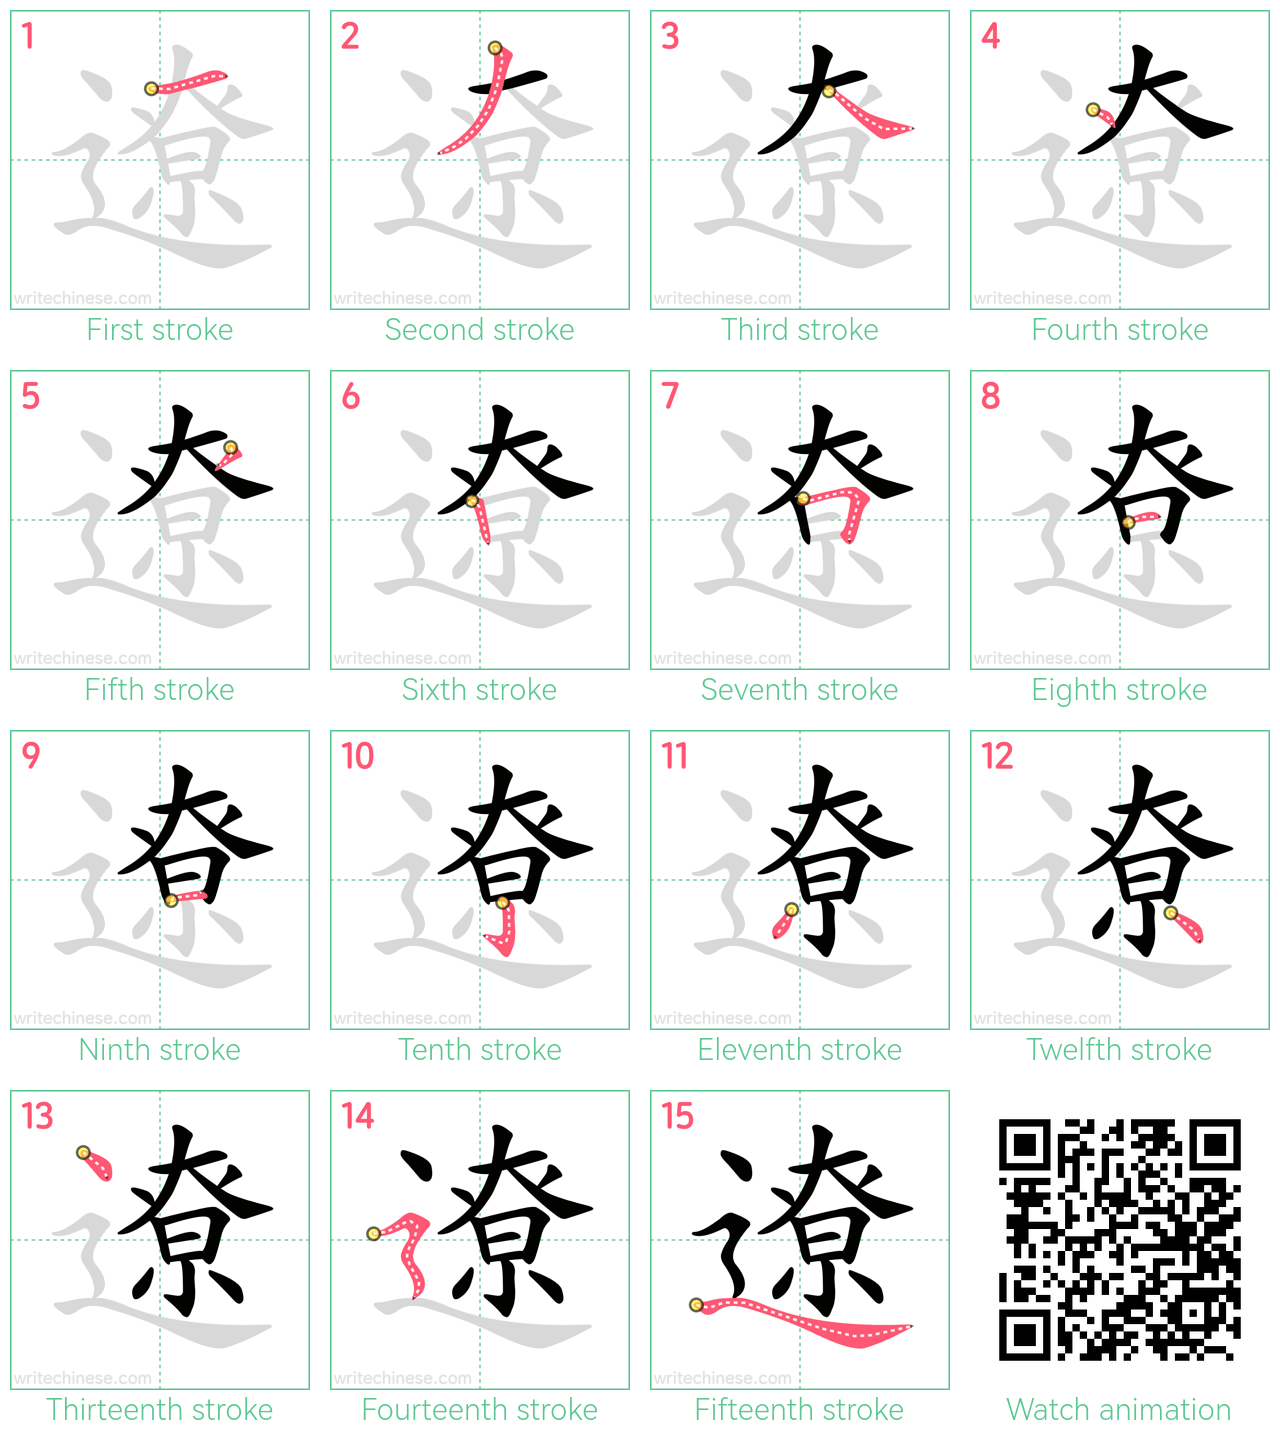 遼 step-by-step stroke order diagrams